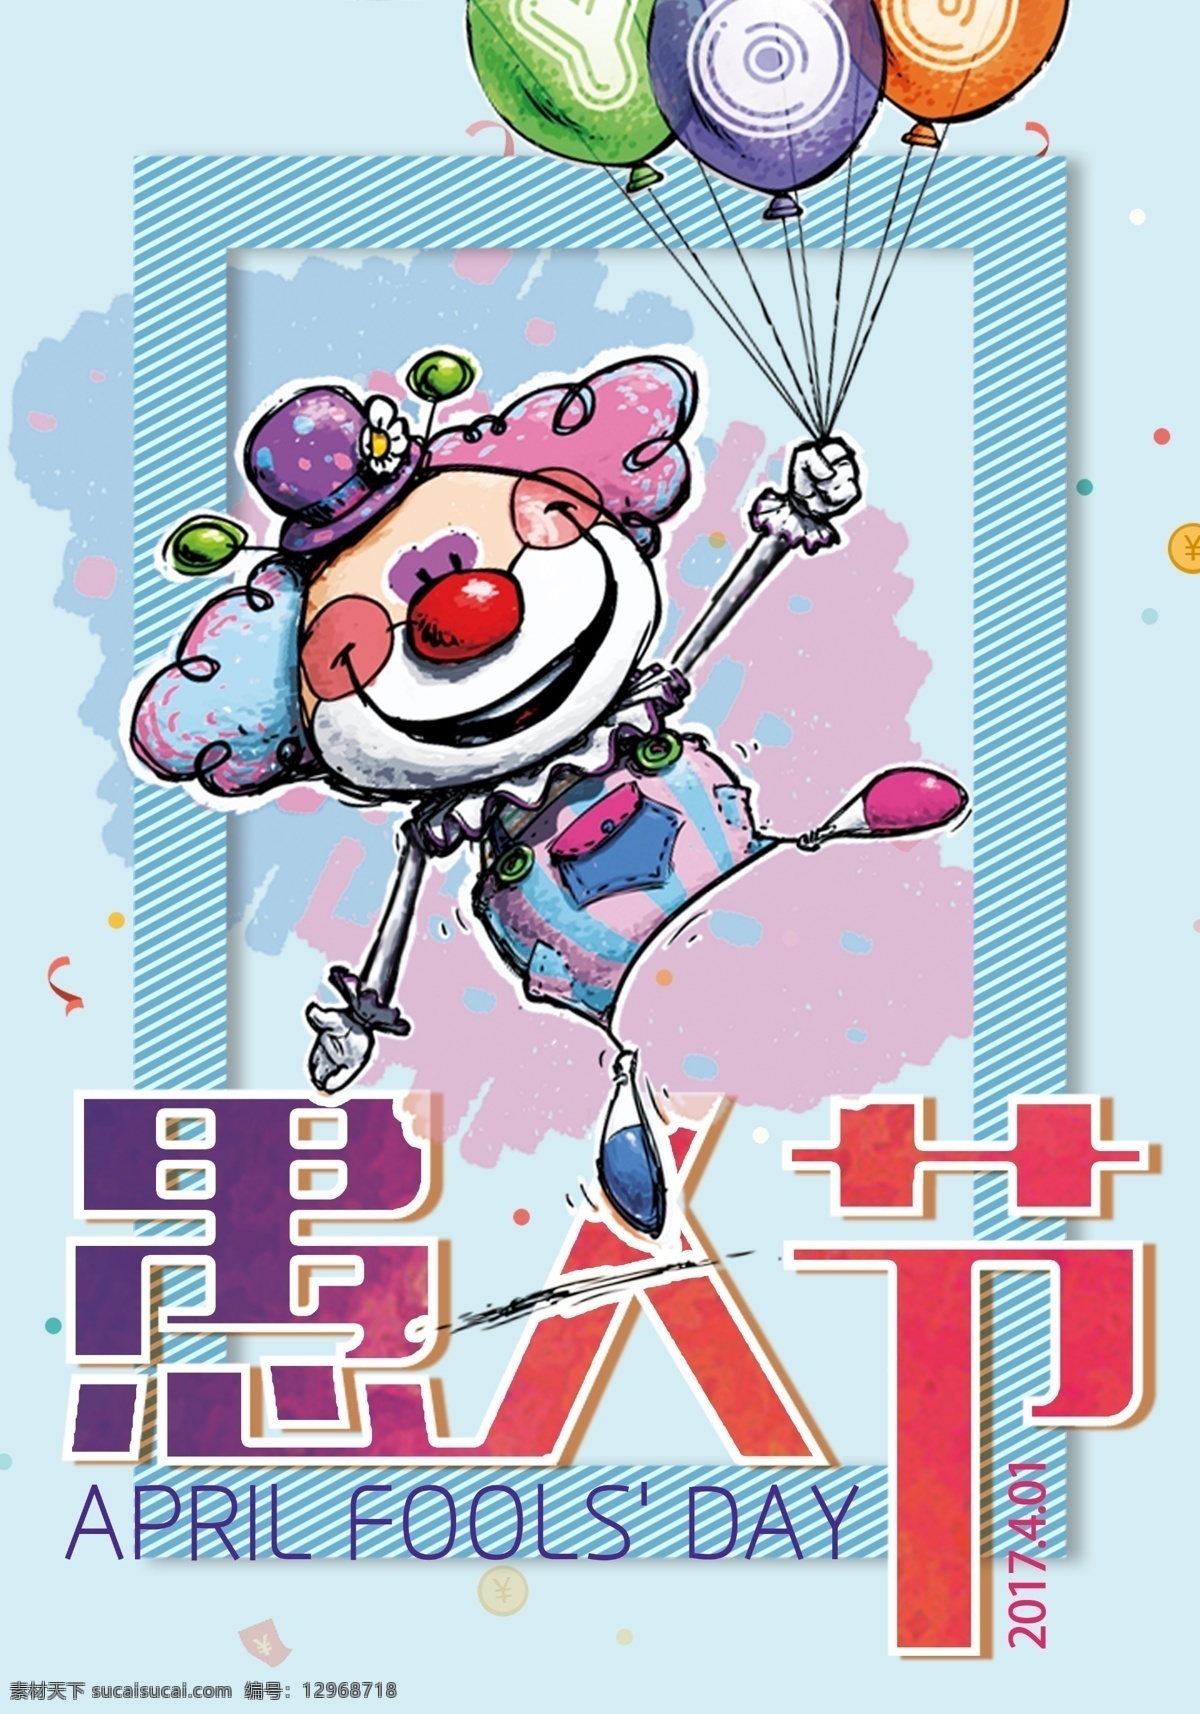 愚人节海报 愚人节 气球 小丑 节日 色彩